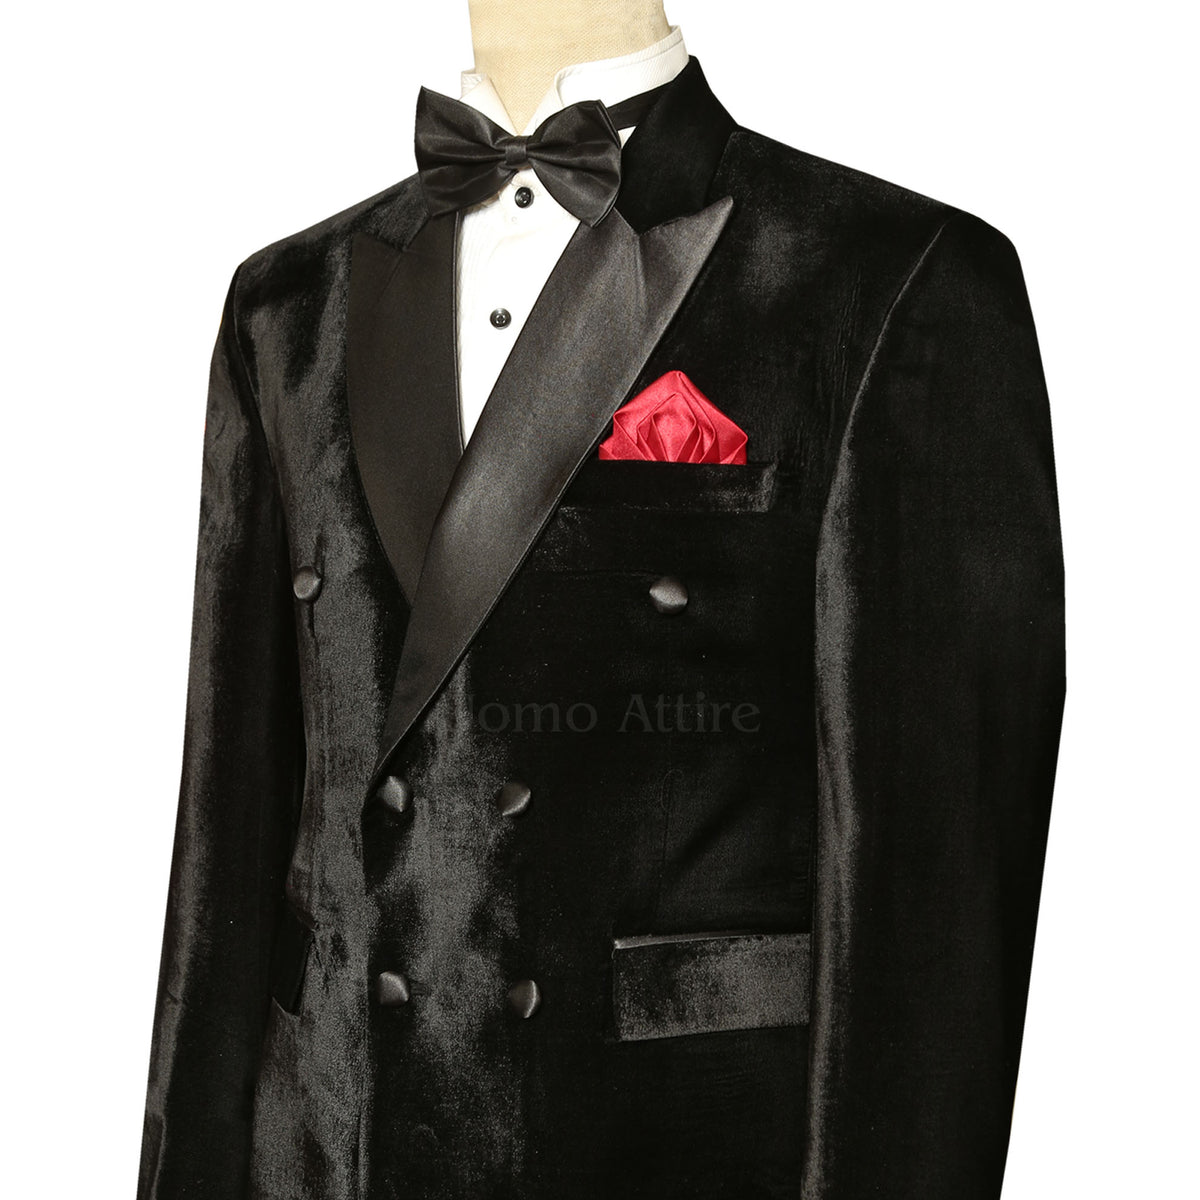 Black Velvet Double Breasted Tuxedo Suit for Men – Uomo Attire